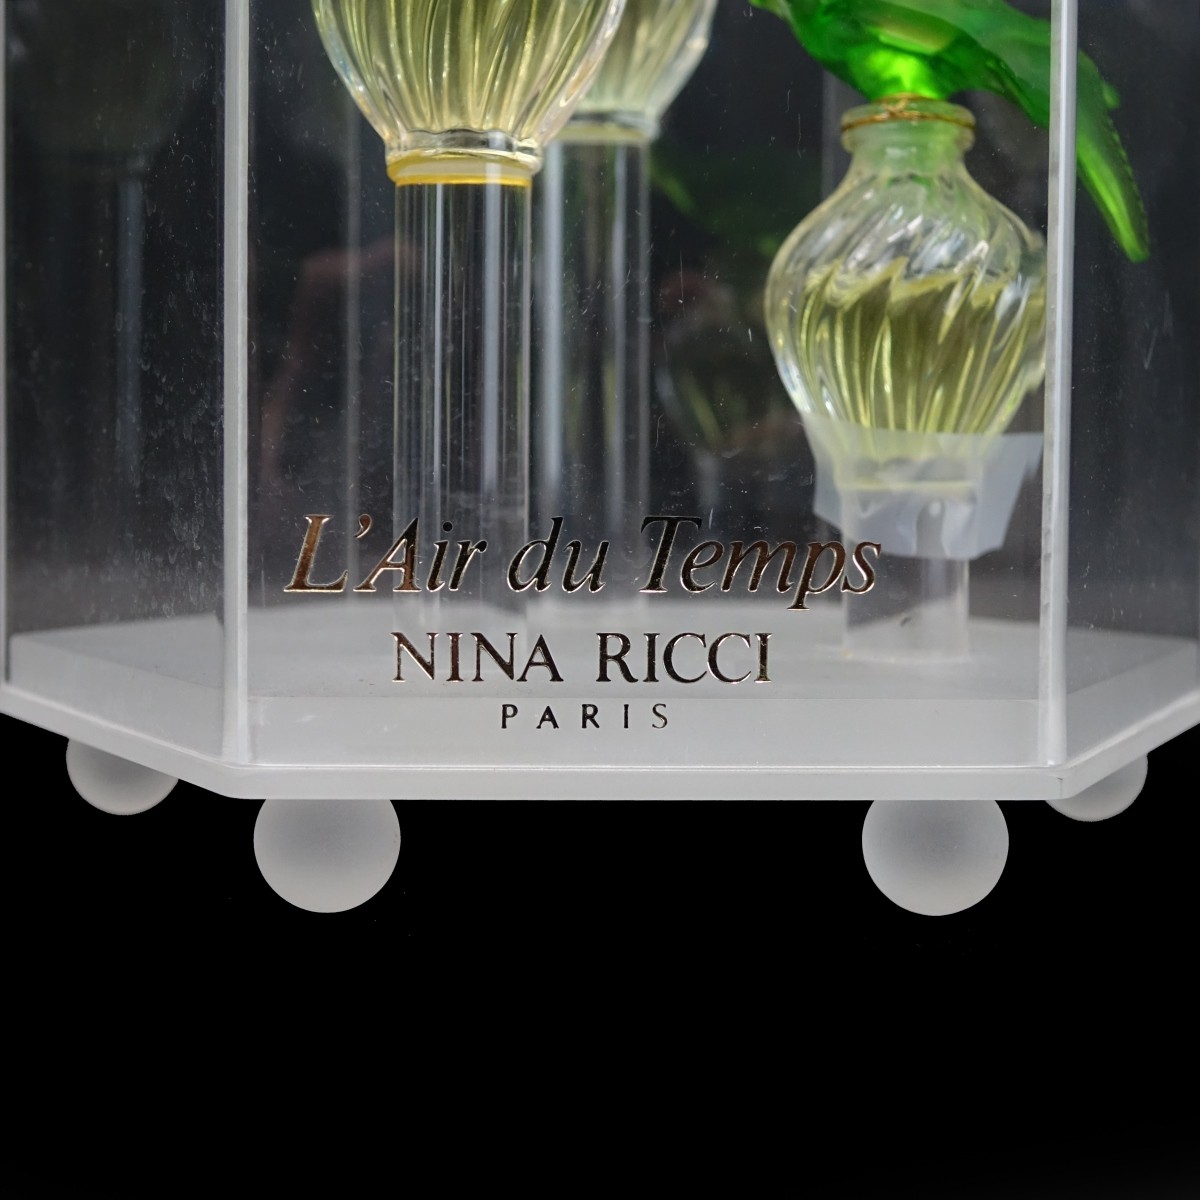 Lalique Perfume Bottles